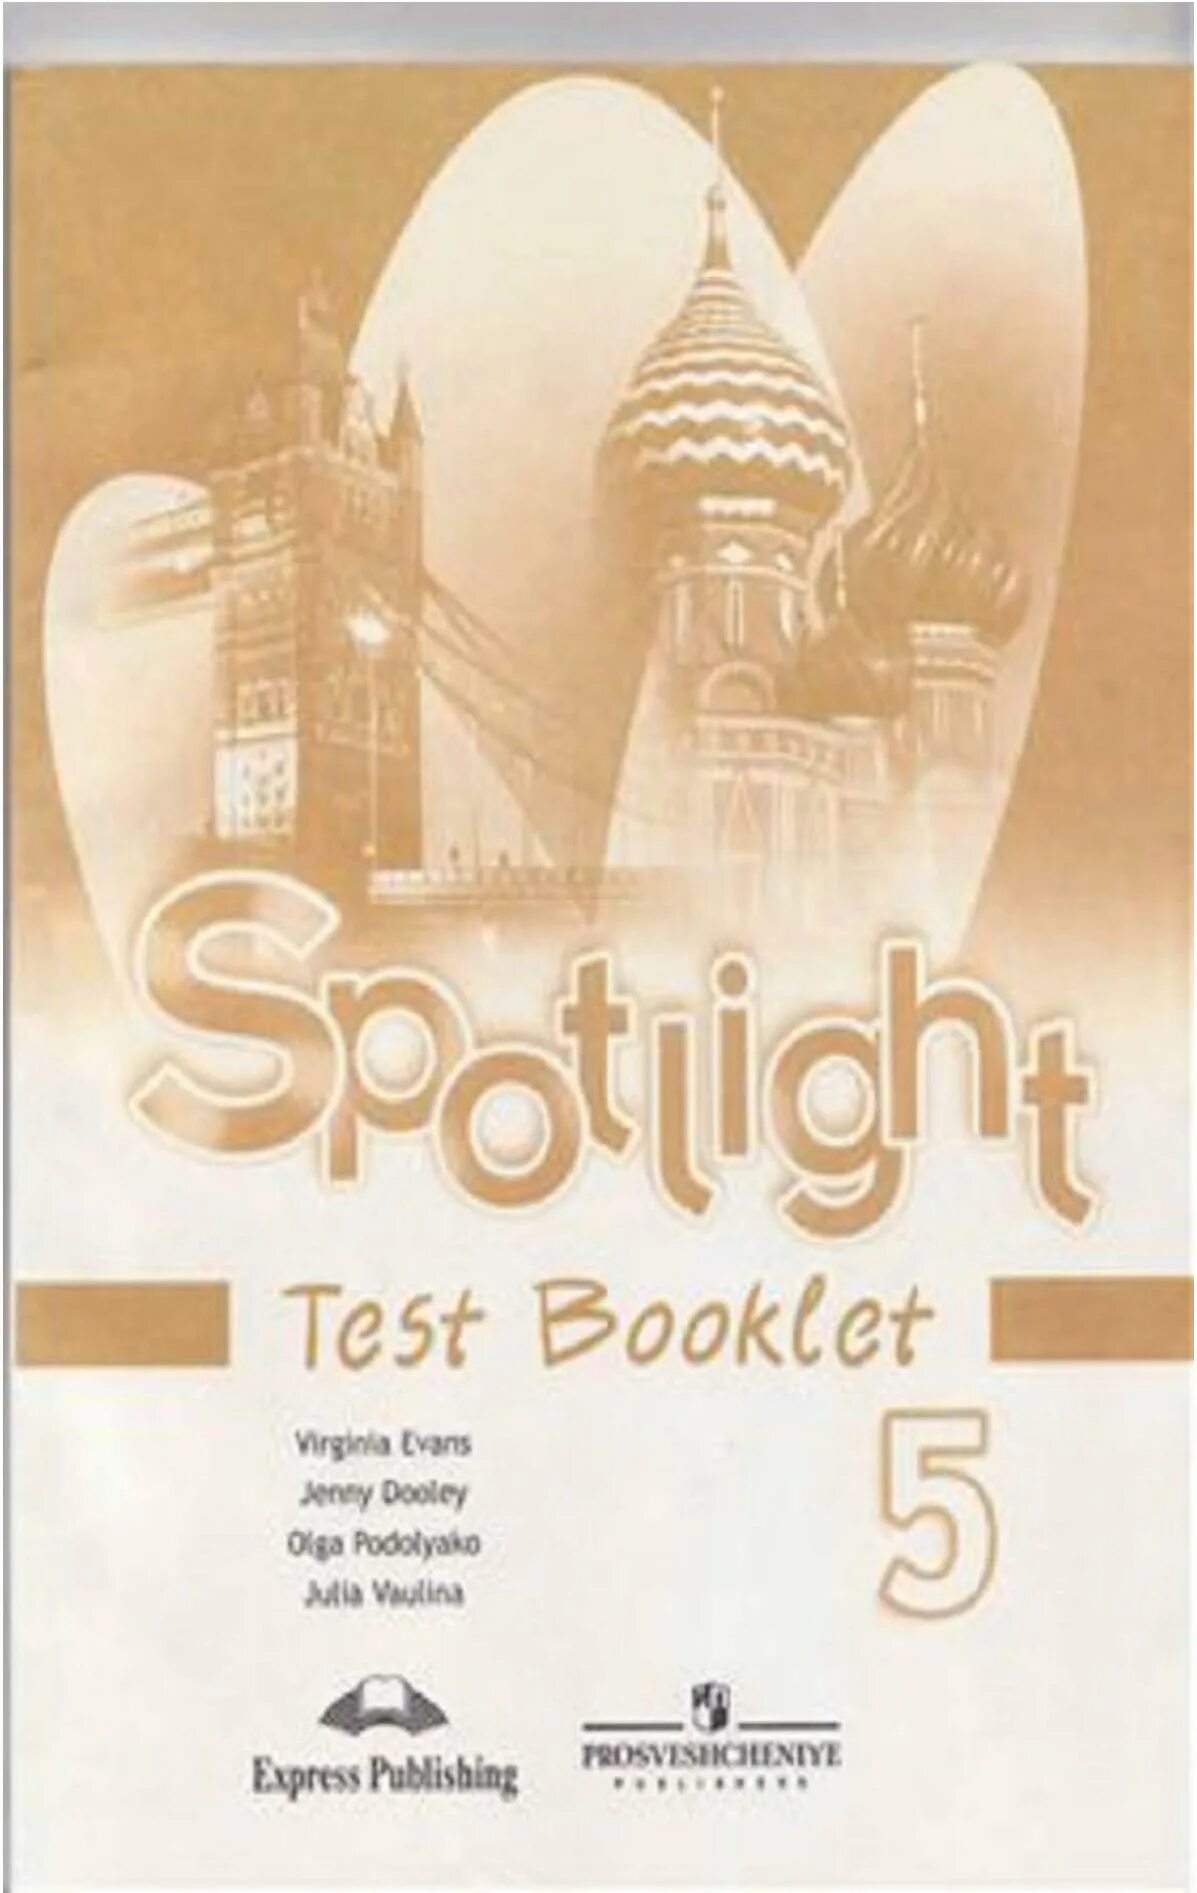 Спотлайт 5 test booklet. Test booklet 5 класс Spotlight. Английский в фокусе 5 класс контрольные задания. Spotlight 5 тест буклет. Английский в фокусе 5 класс тест буклет.